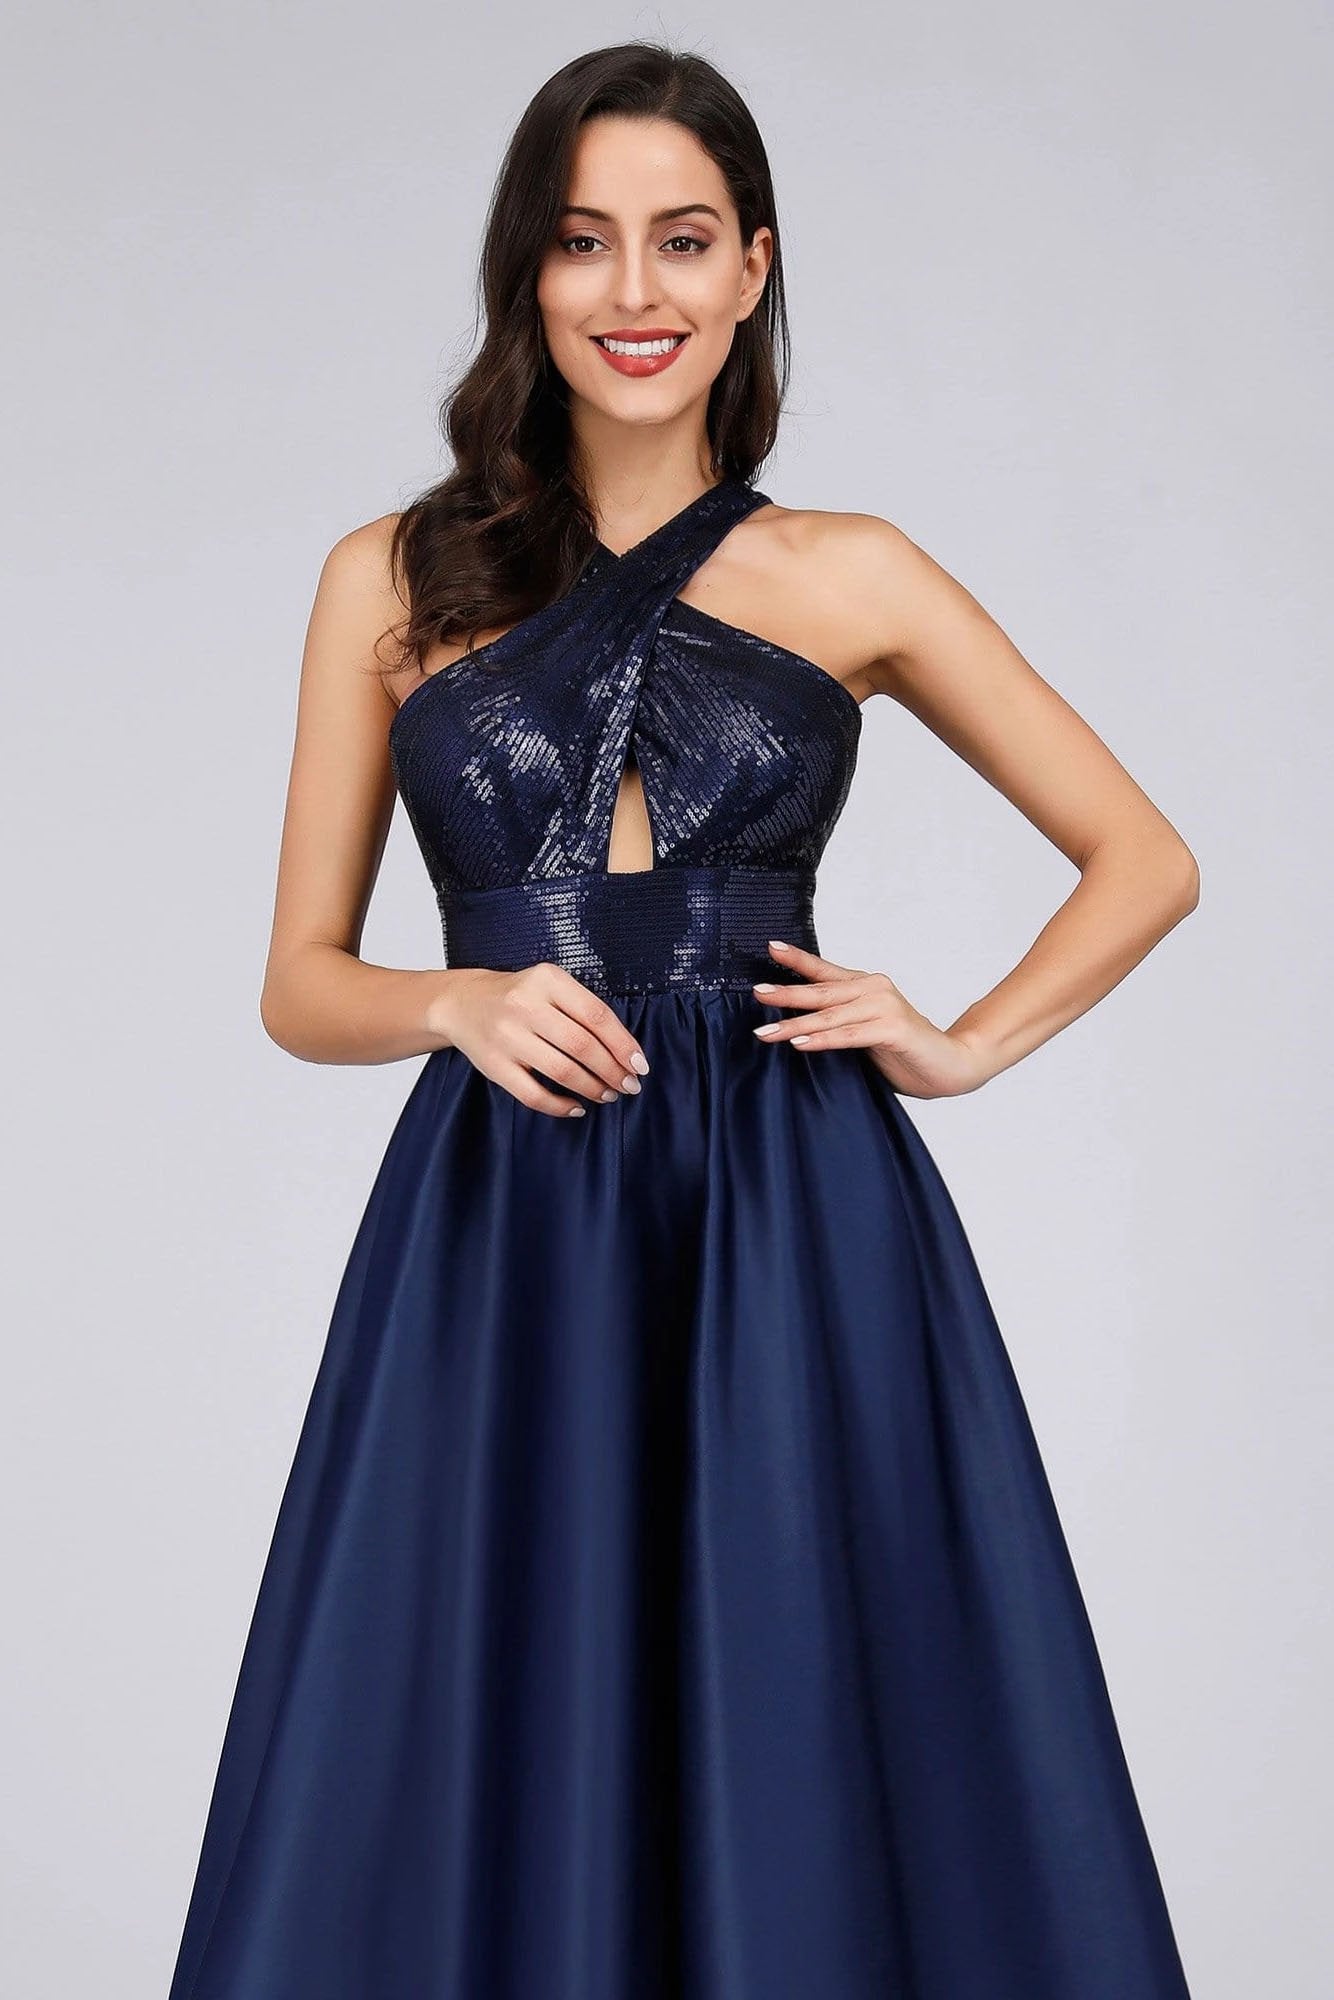 Cold Shoulder Sequin Navy Blue Prom Dresses Backless Satin Long Evening Dresses STC15132